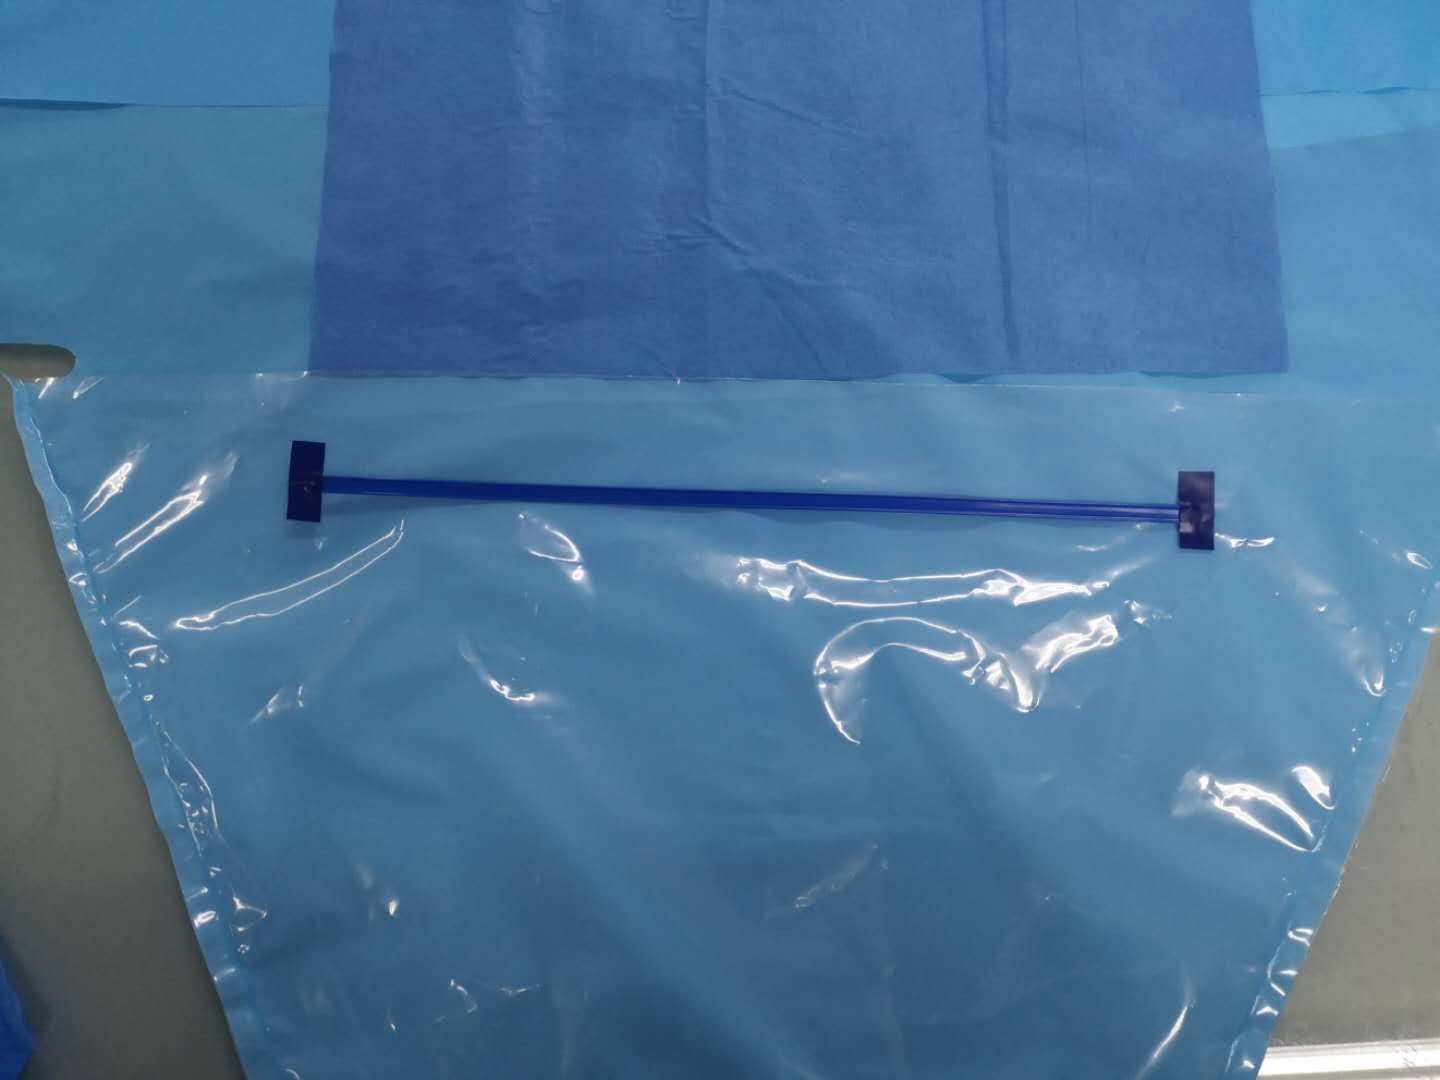 Ιατρική χειρουργική κουρτίνα μιας χρήσης αποστειρωμένη κουρτίνα κάτω από τους γλουτούς με θήκη
